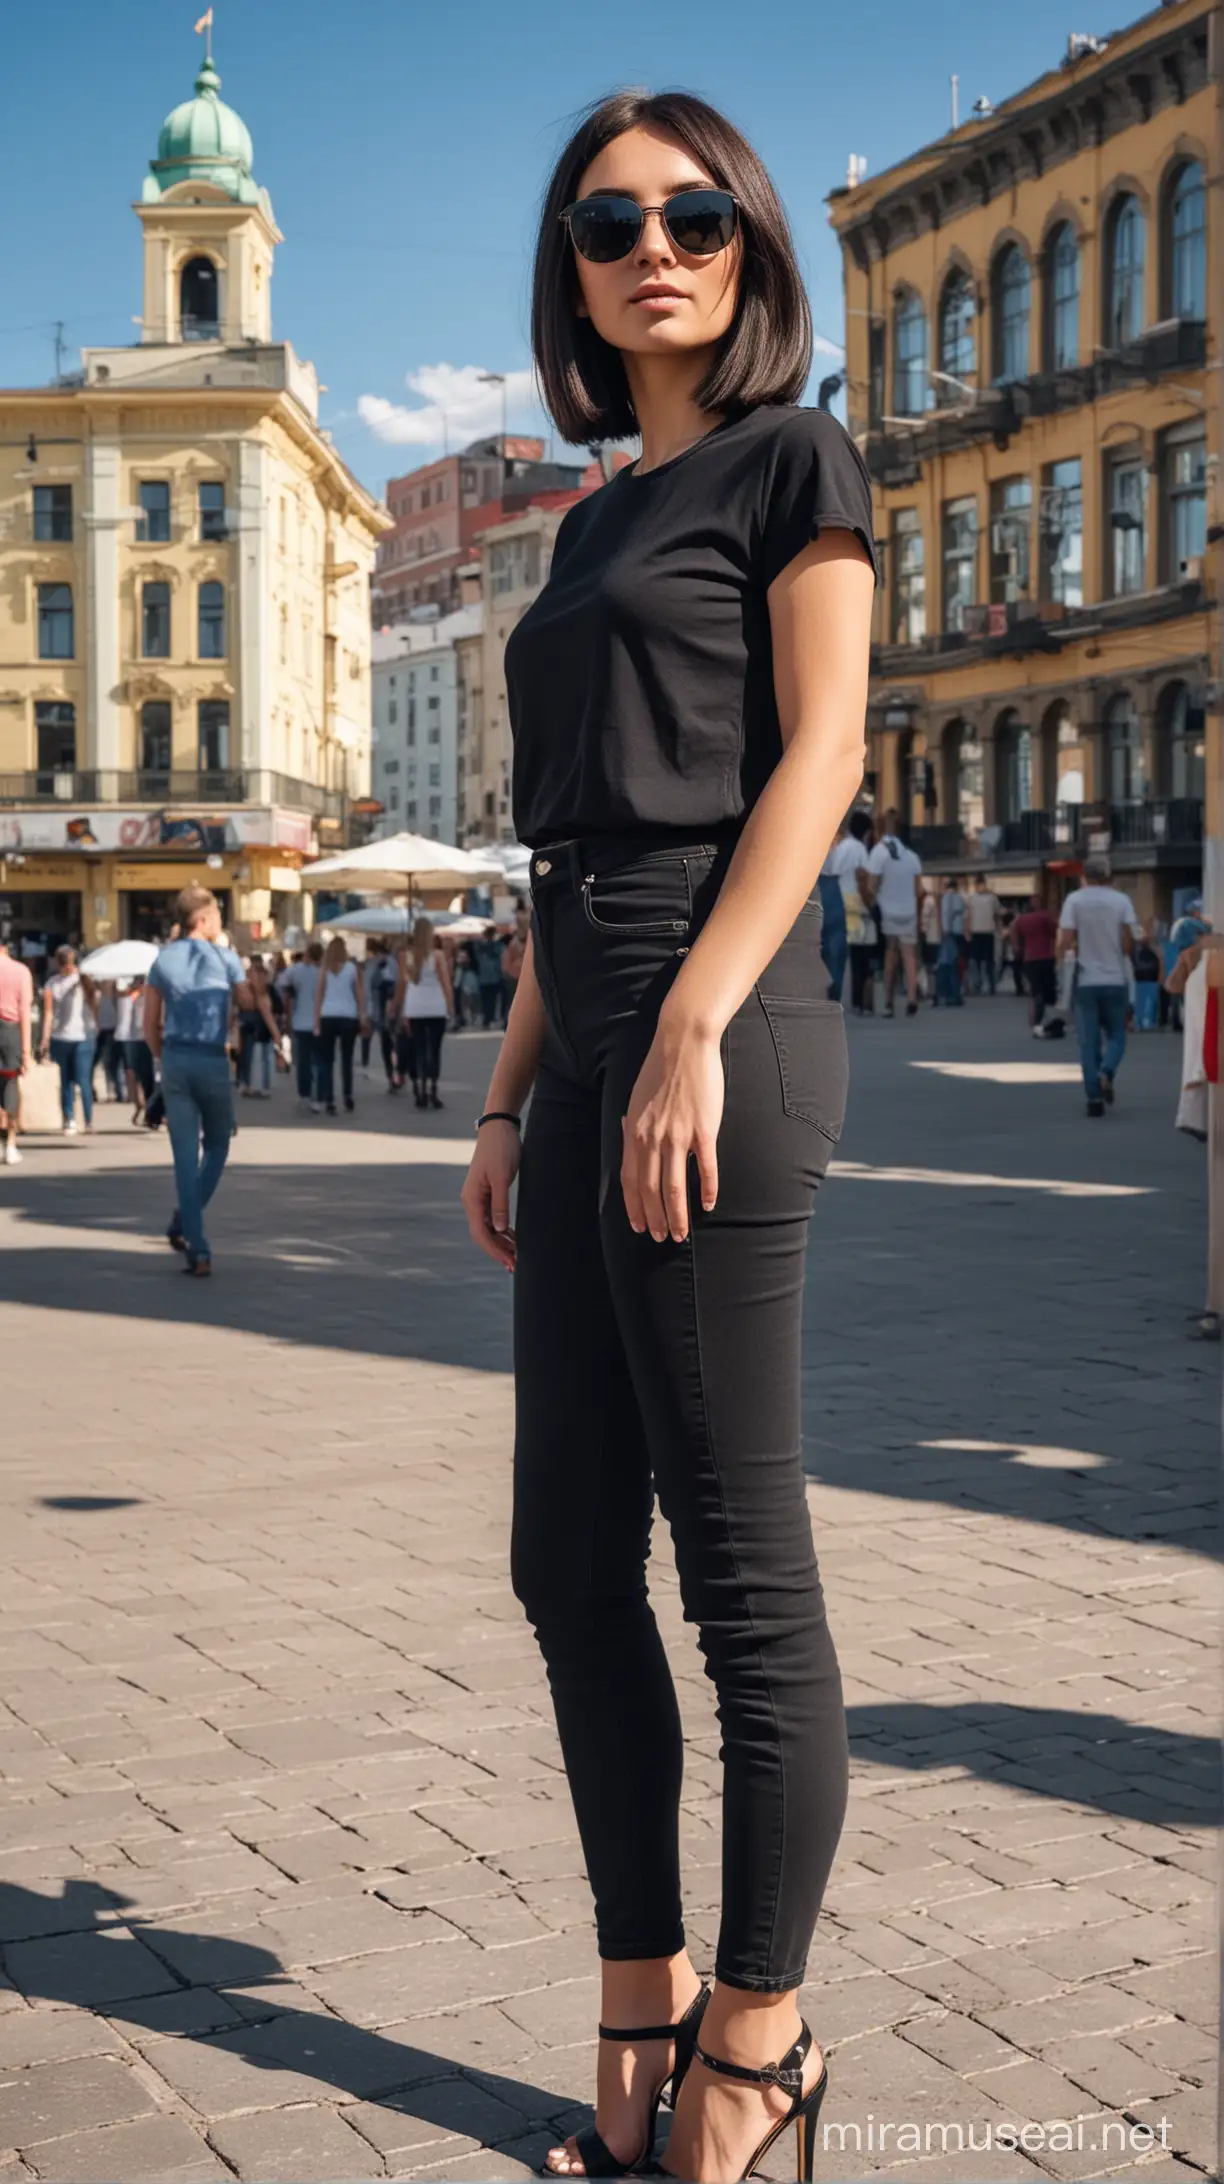 Худощавая черноволосая женщина со стрижкой "каре" в черных джинсах и черной майке и зеркальных очках стоит на фоне центральной площади Воркуты в июльский полдень.